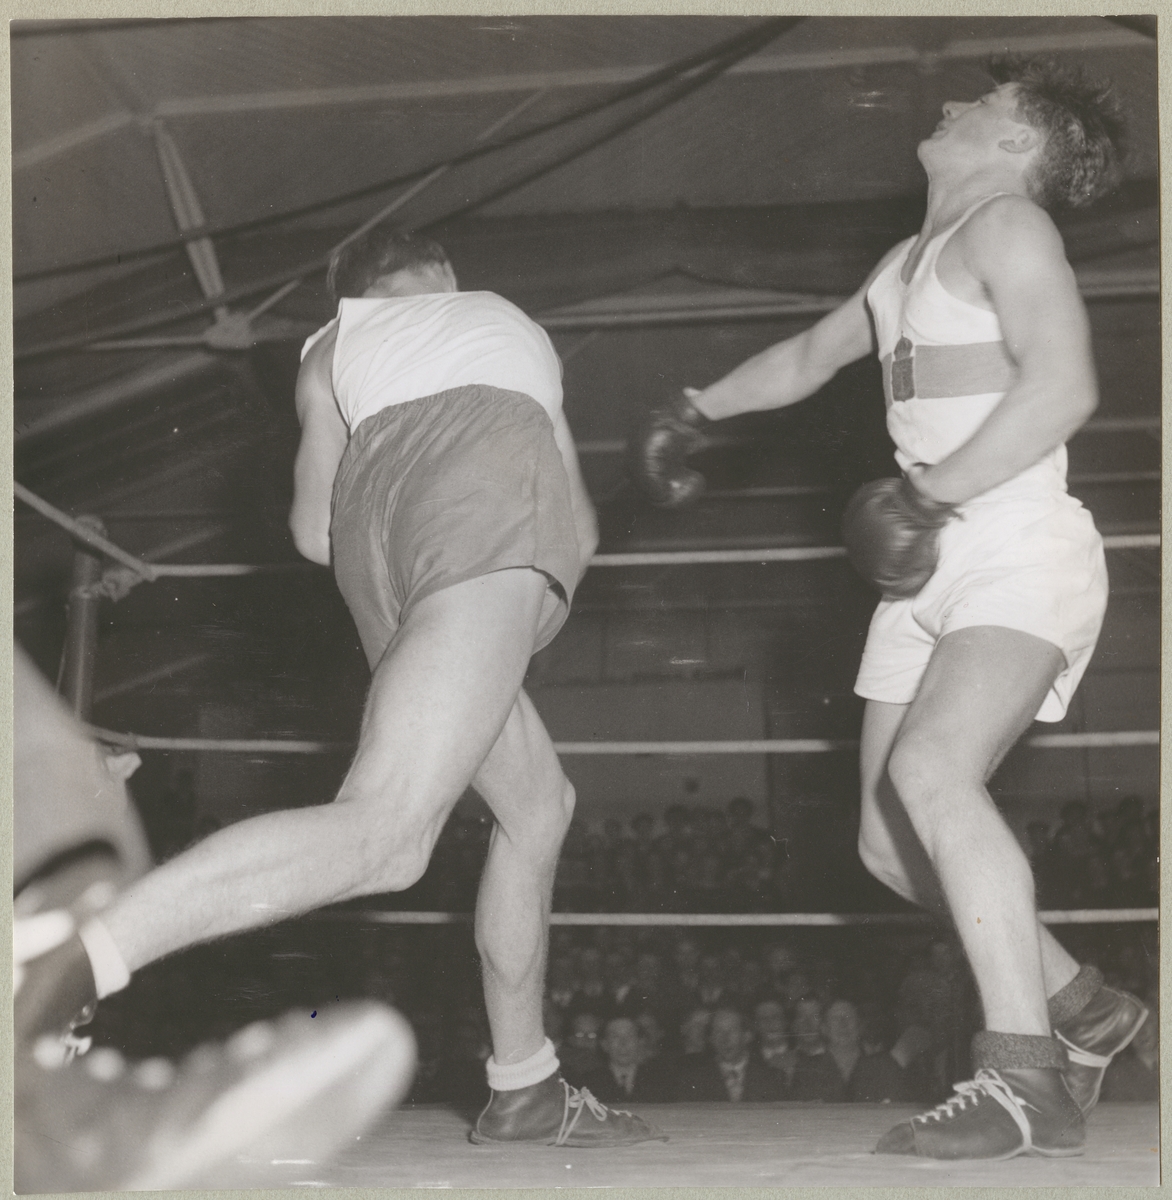 Två män klädda i idrottskläder och boxningshandskar står i en boxningsring och boxas. I bakgrunden syns åskådare.